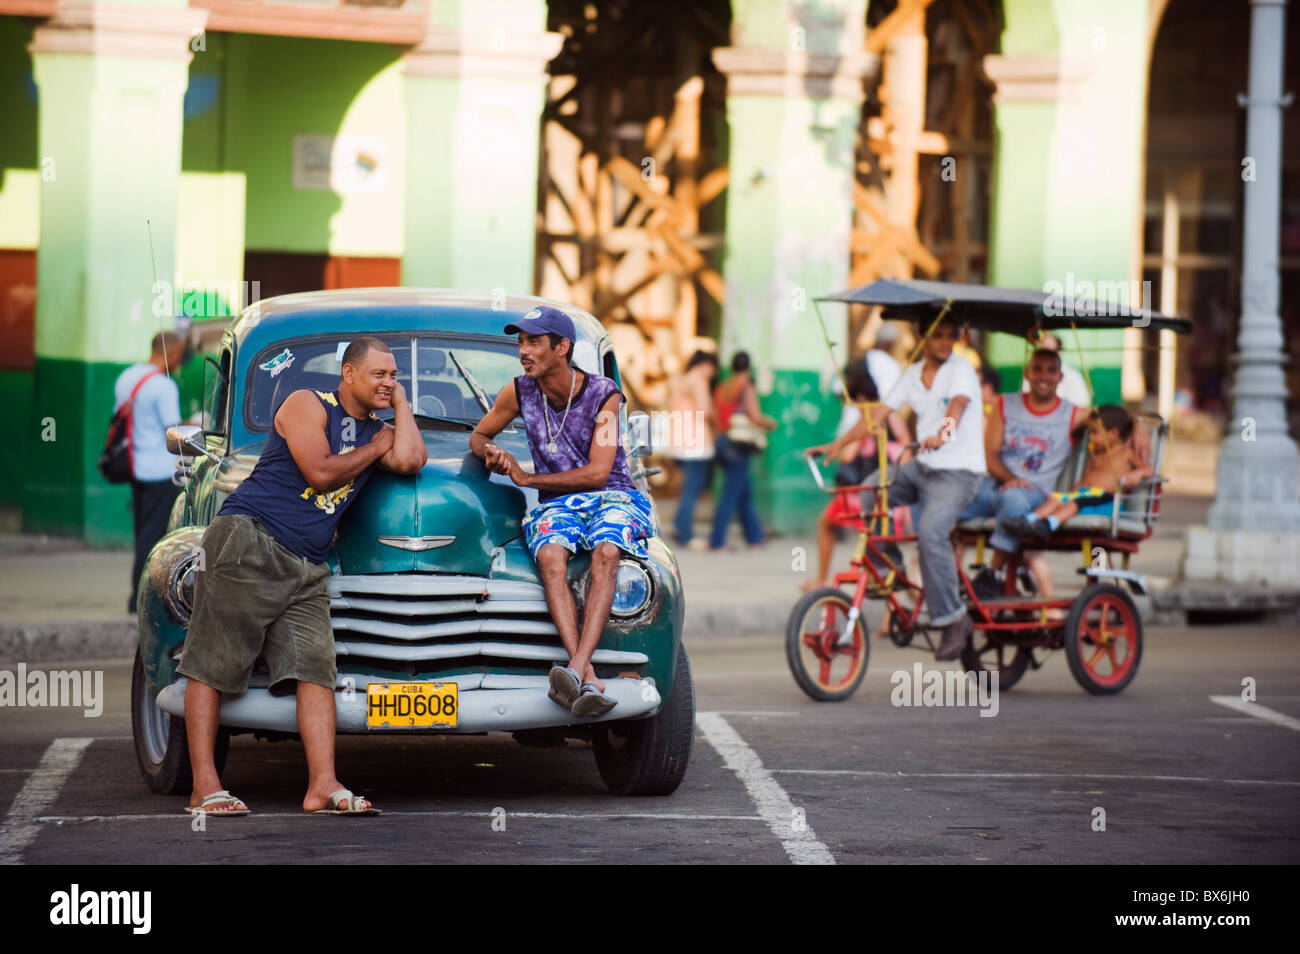 Les hommes se détendre sur une voiture américaine classique des années 1950, au centre de La Havane, Cuba, Antilles, Caraïbes, Amérique Centrale Banque D'Images